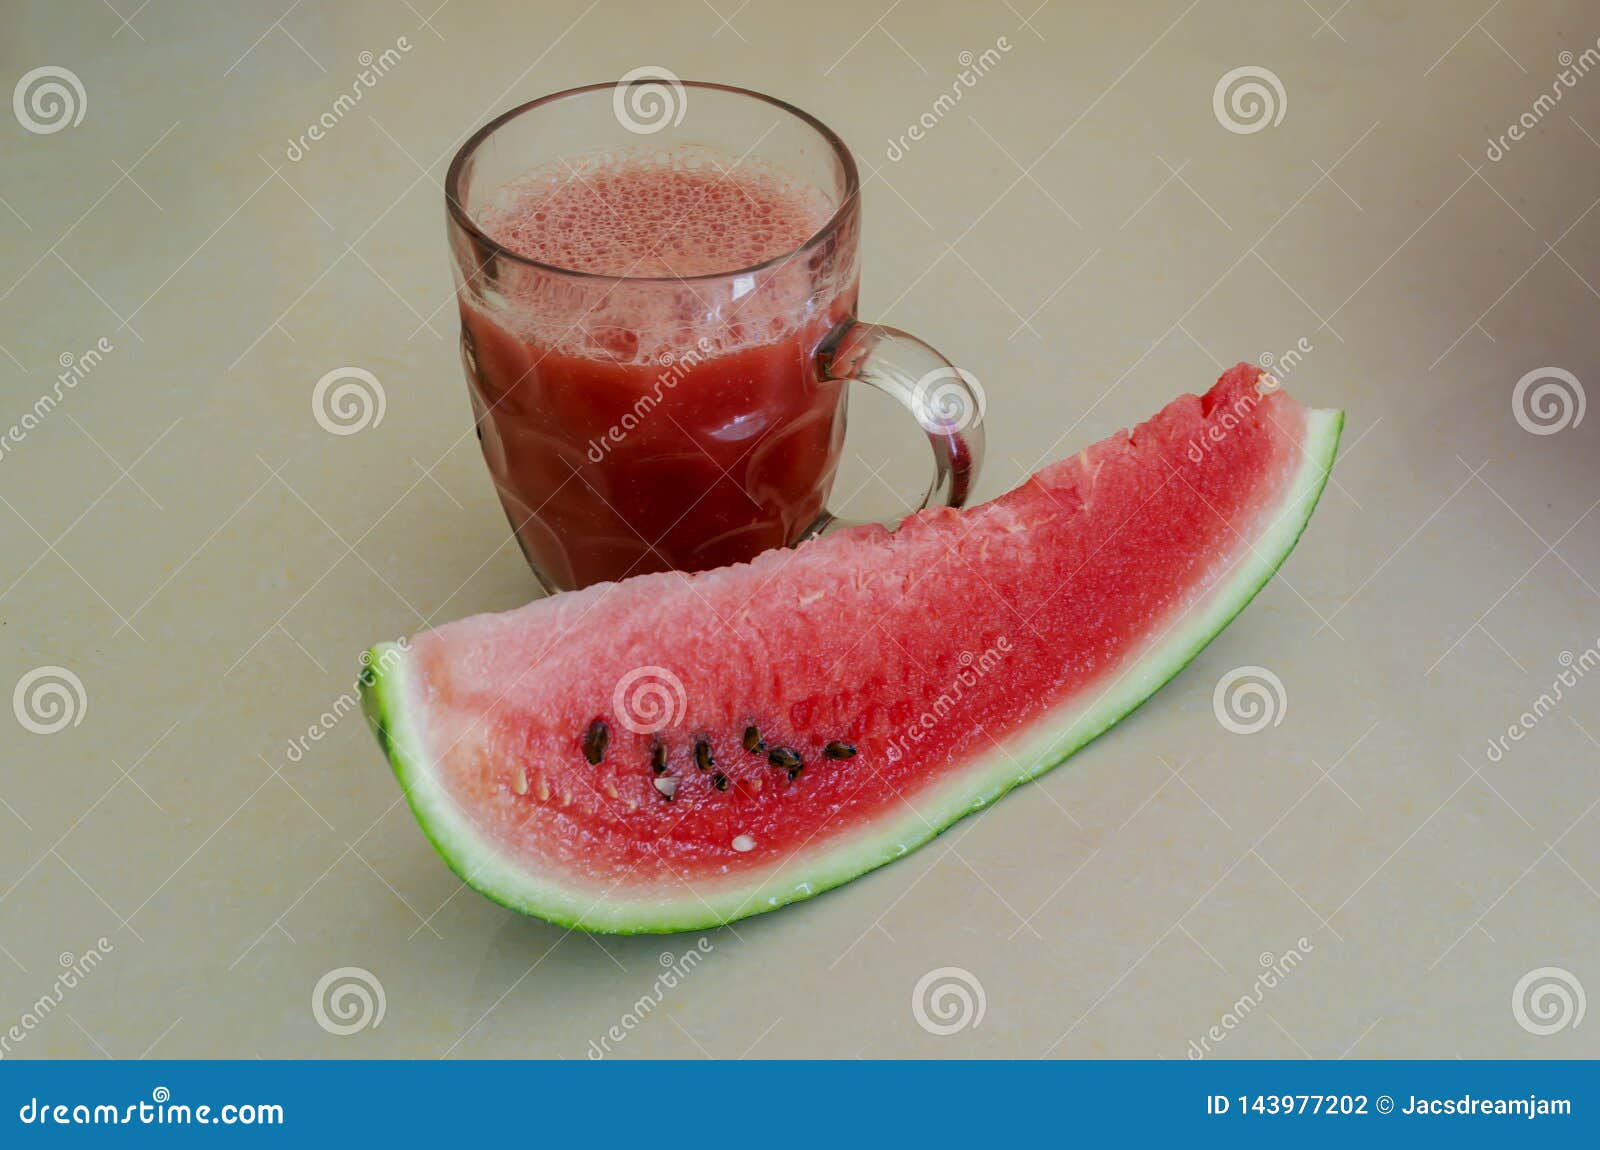 calabaza watermelon juice